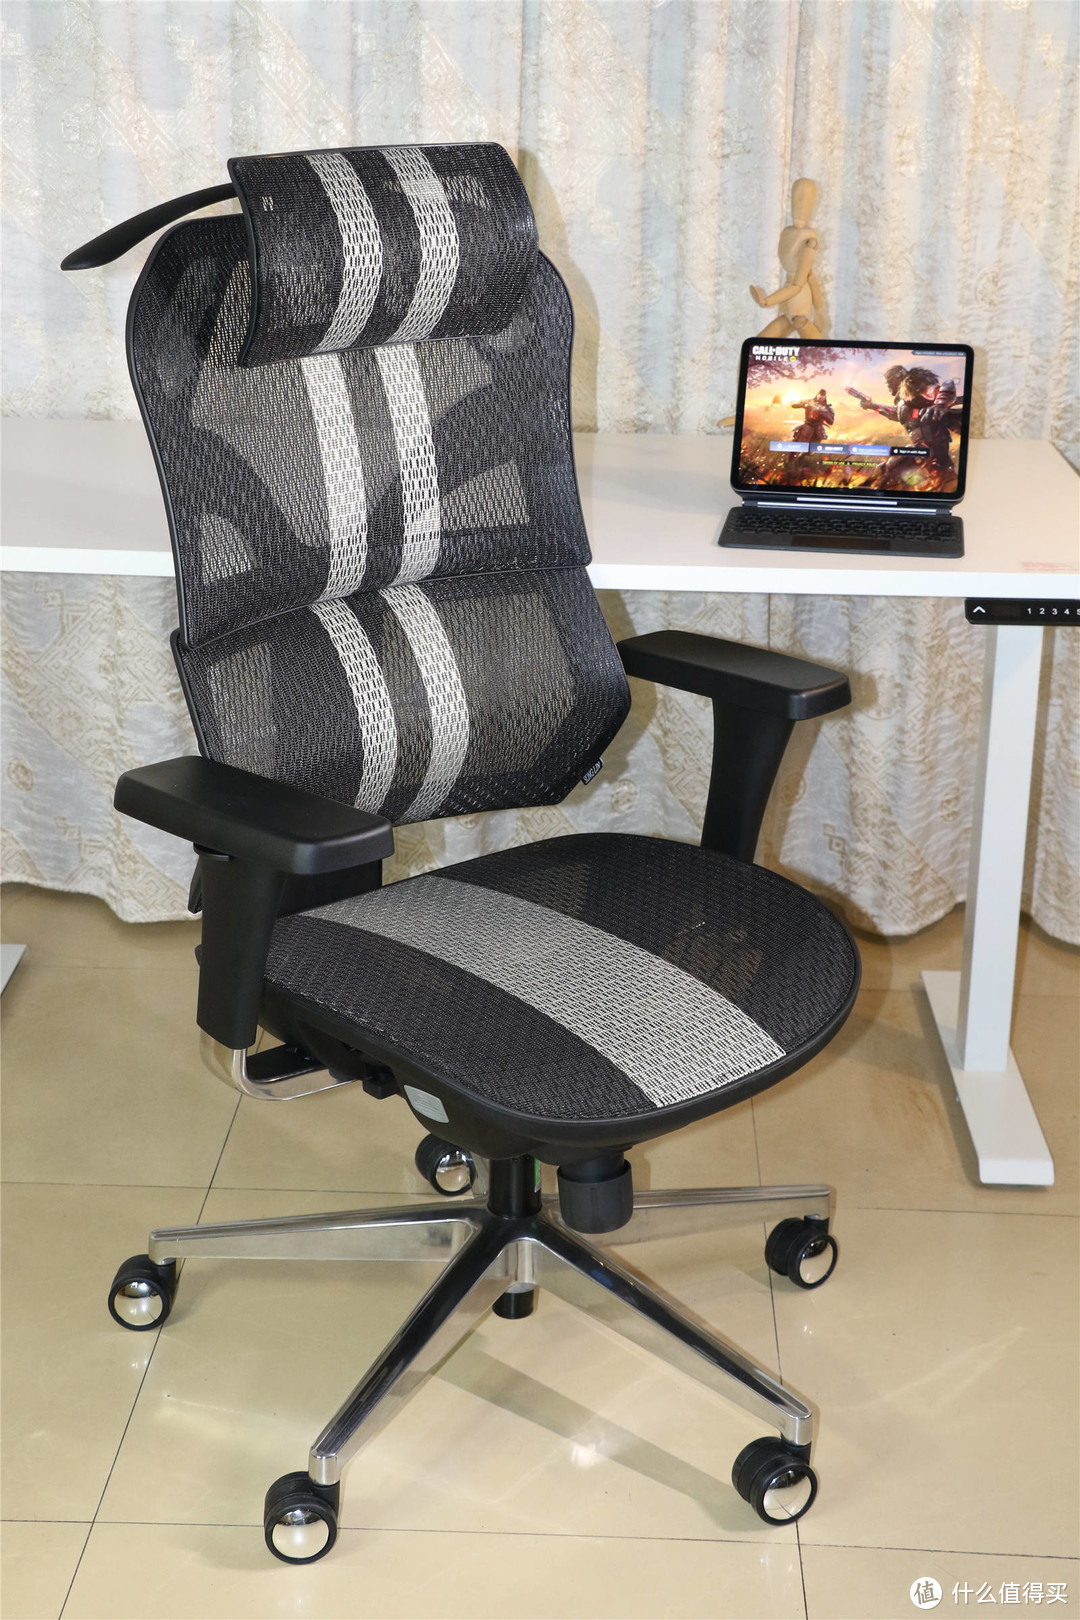 2千元价位 舒适又能打-享耀家X5人体工学椅入手体验